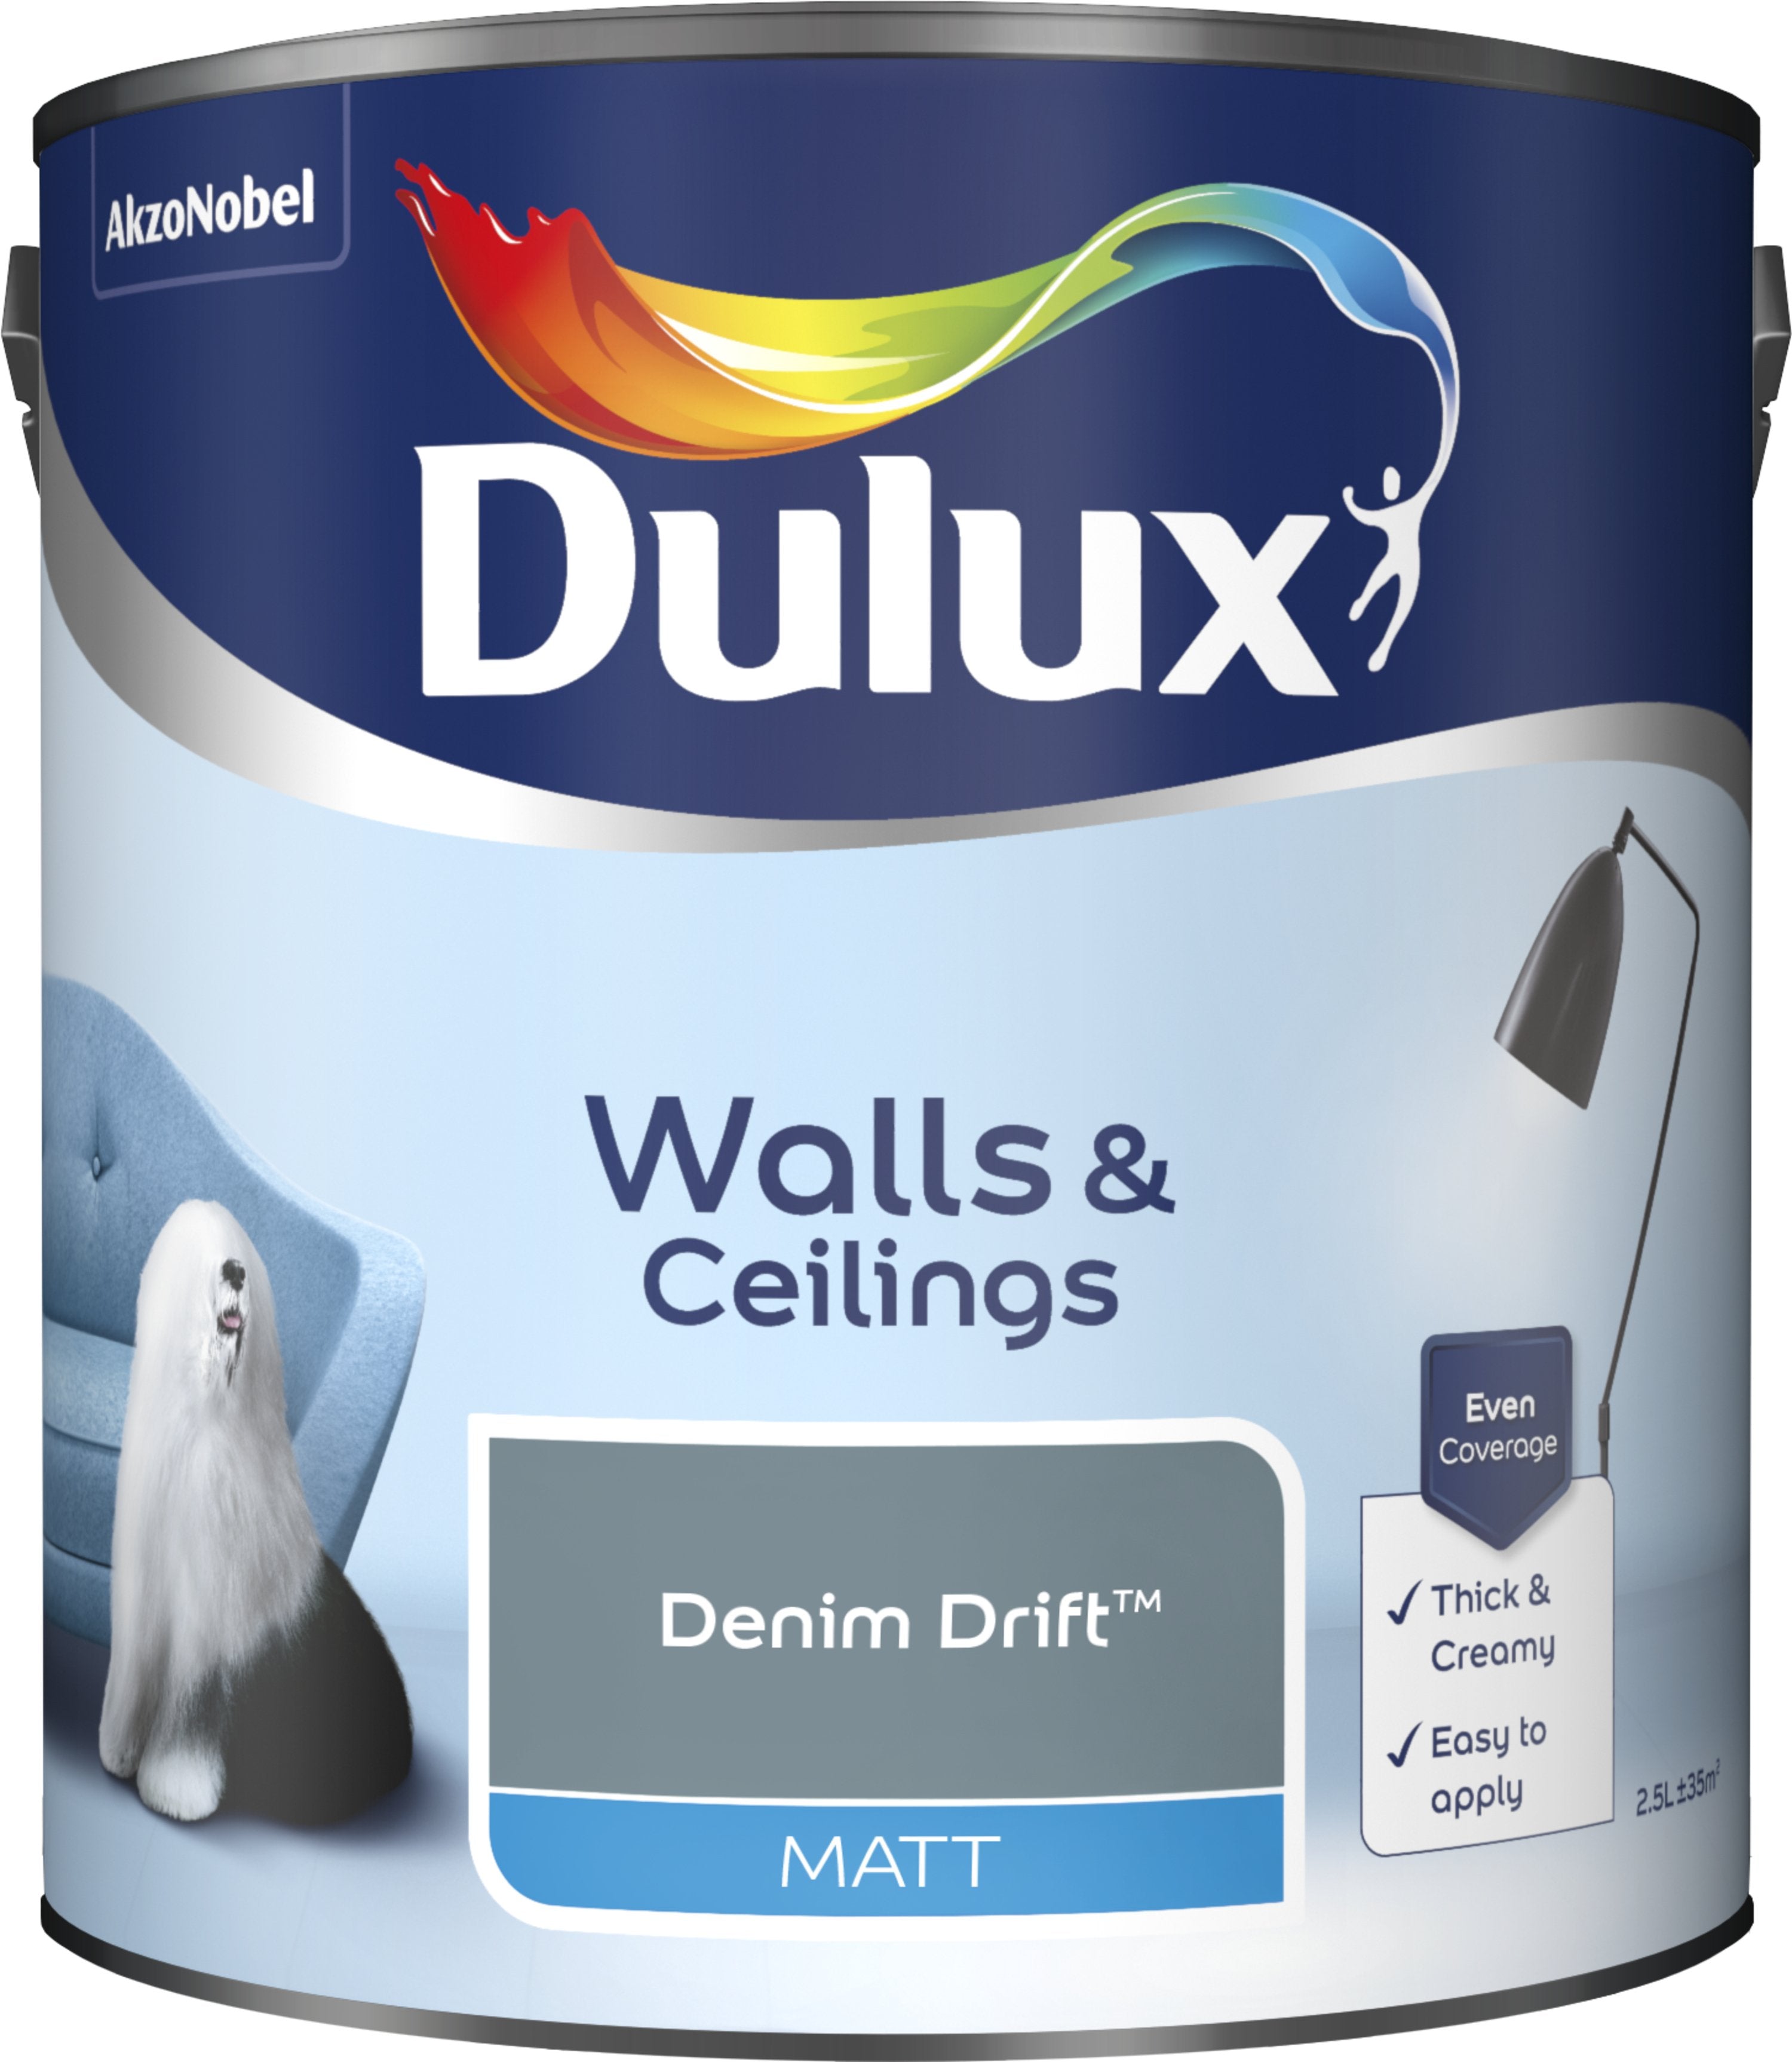 Dulux Matt Emulsion Paint For Walls And Ceilings - Denim Drift 2.5L Garden & Diy  Home Improvements